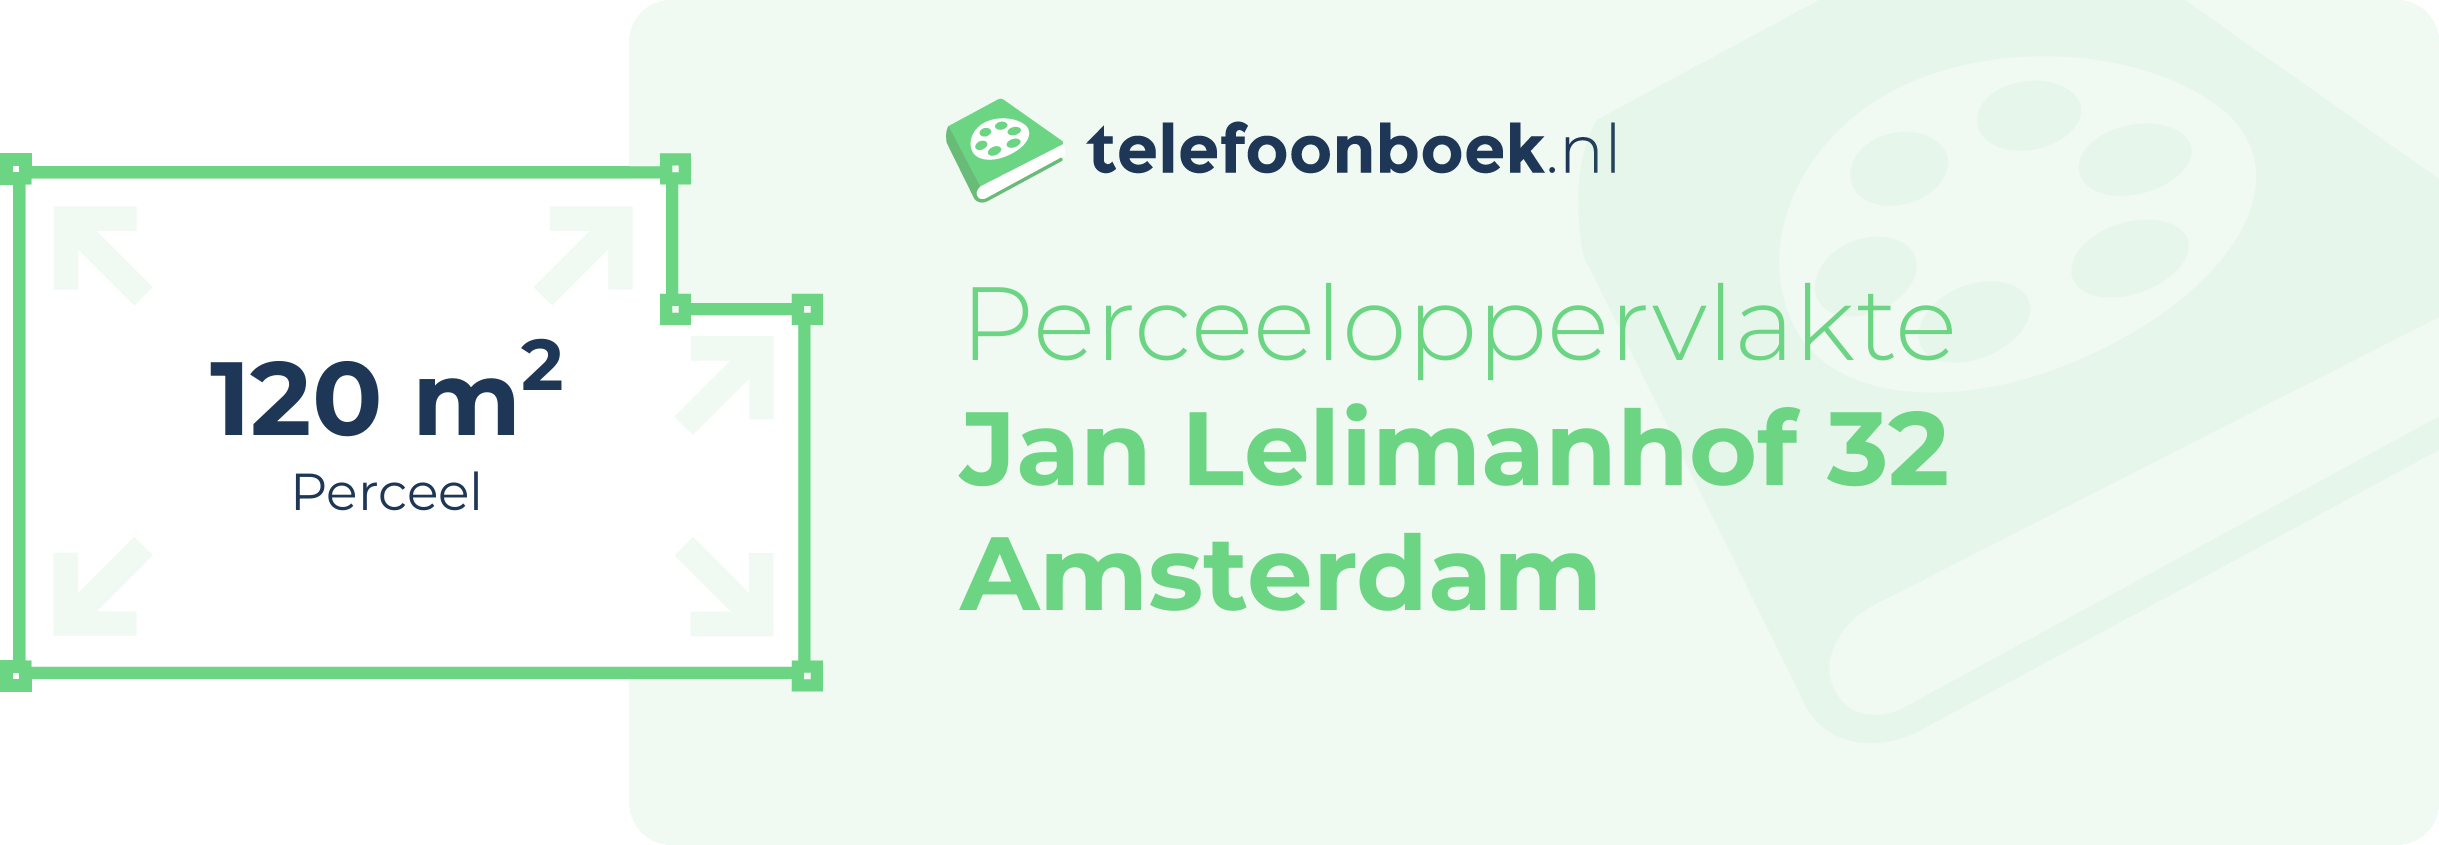 Perceeloppervlakte Jan Lelimanhof 32 Amsterdam